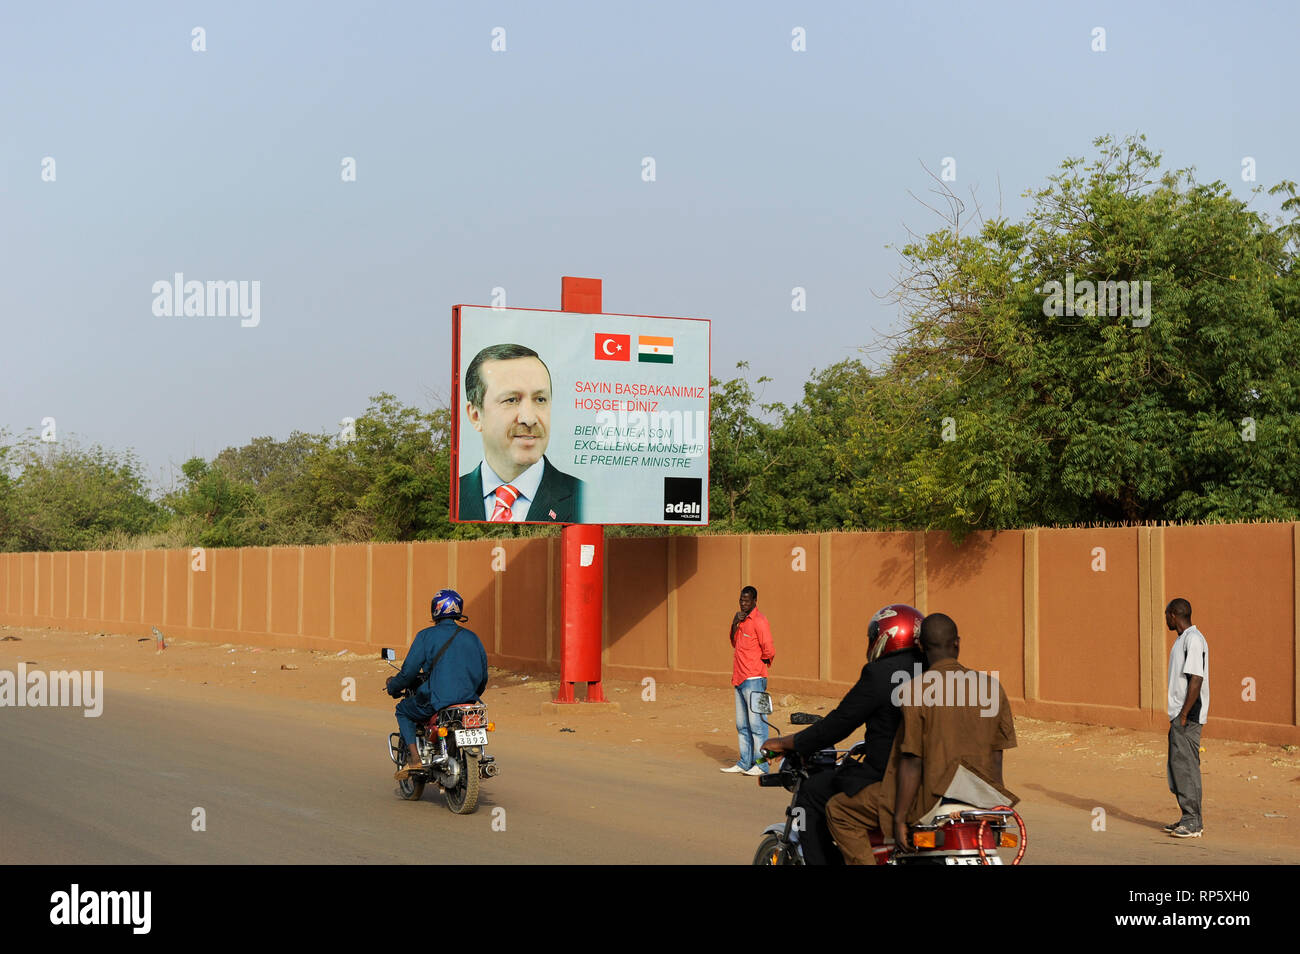 NIGER Niamey, türkischem Einfluss in Afrika, Reklametafeln mit türkischen Präsidenten Recep Tayyip Erdoğan für einen Staatsbesuch in Niger Stockfoto